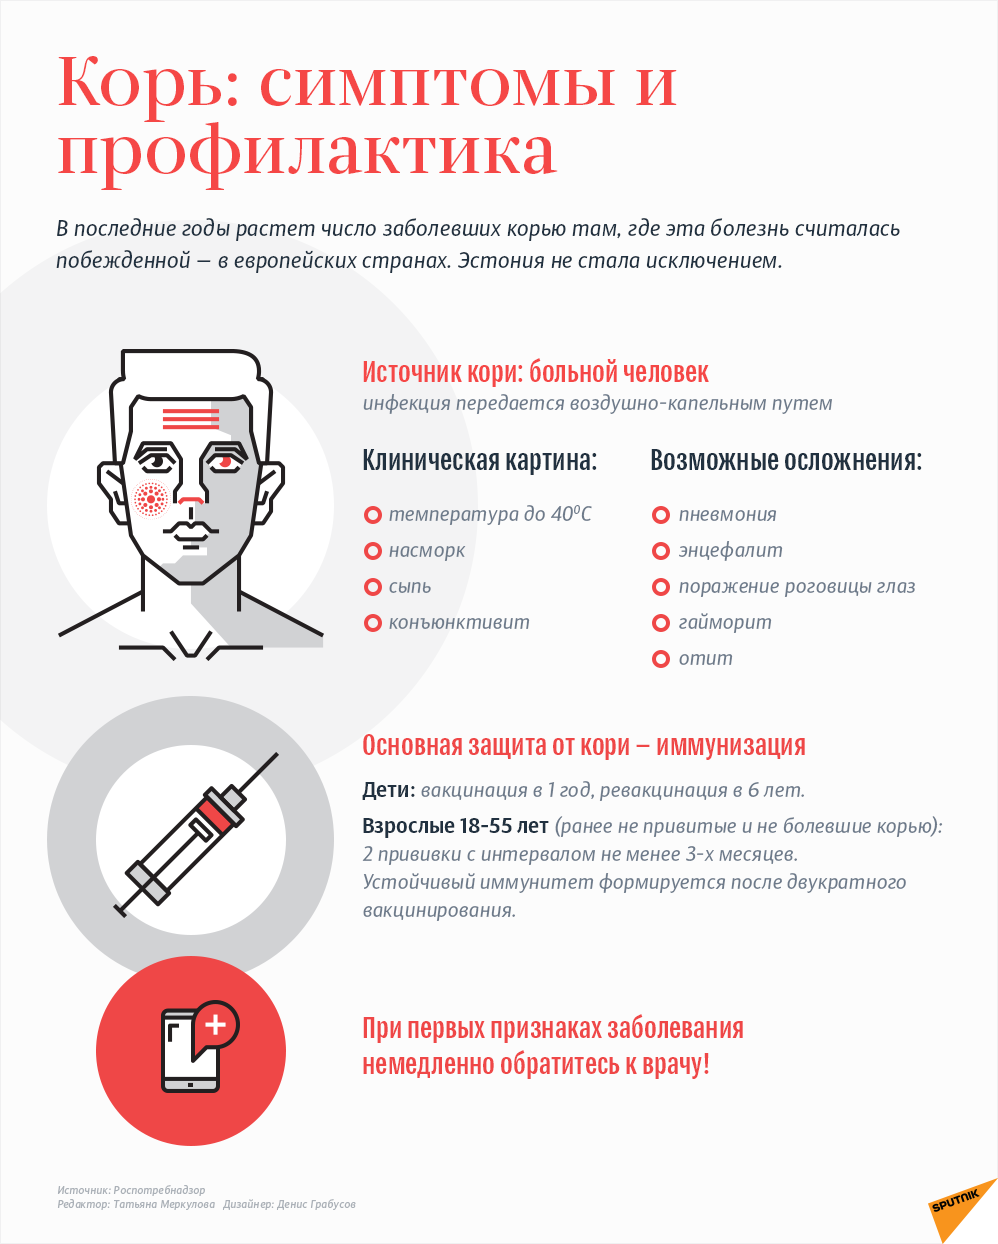 Корь: симптомы и профилактика - Sputnik Латвия